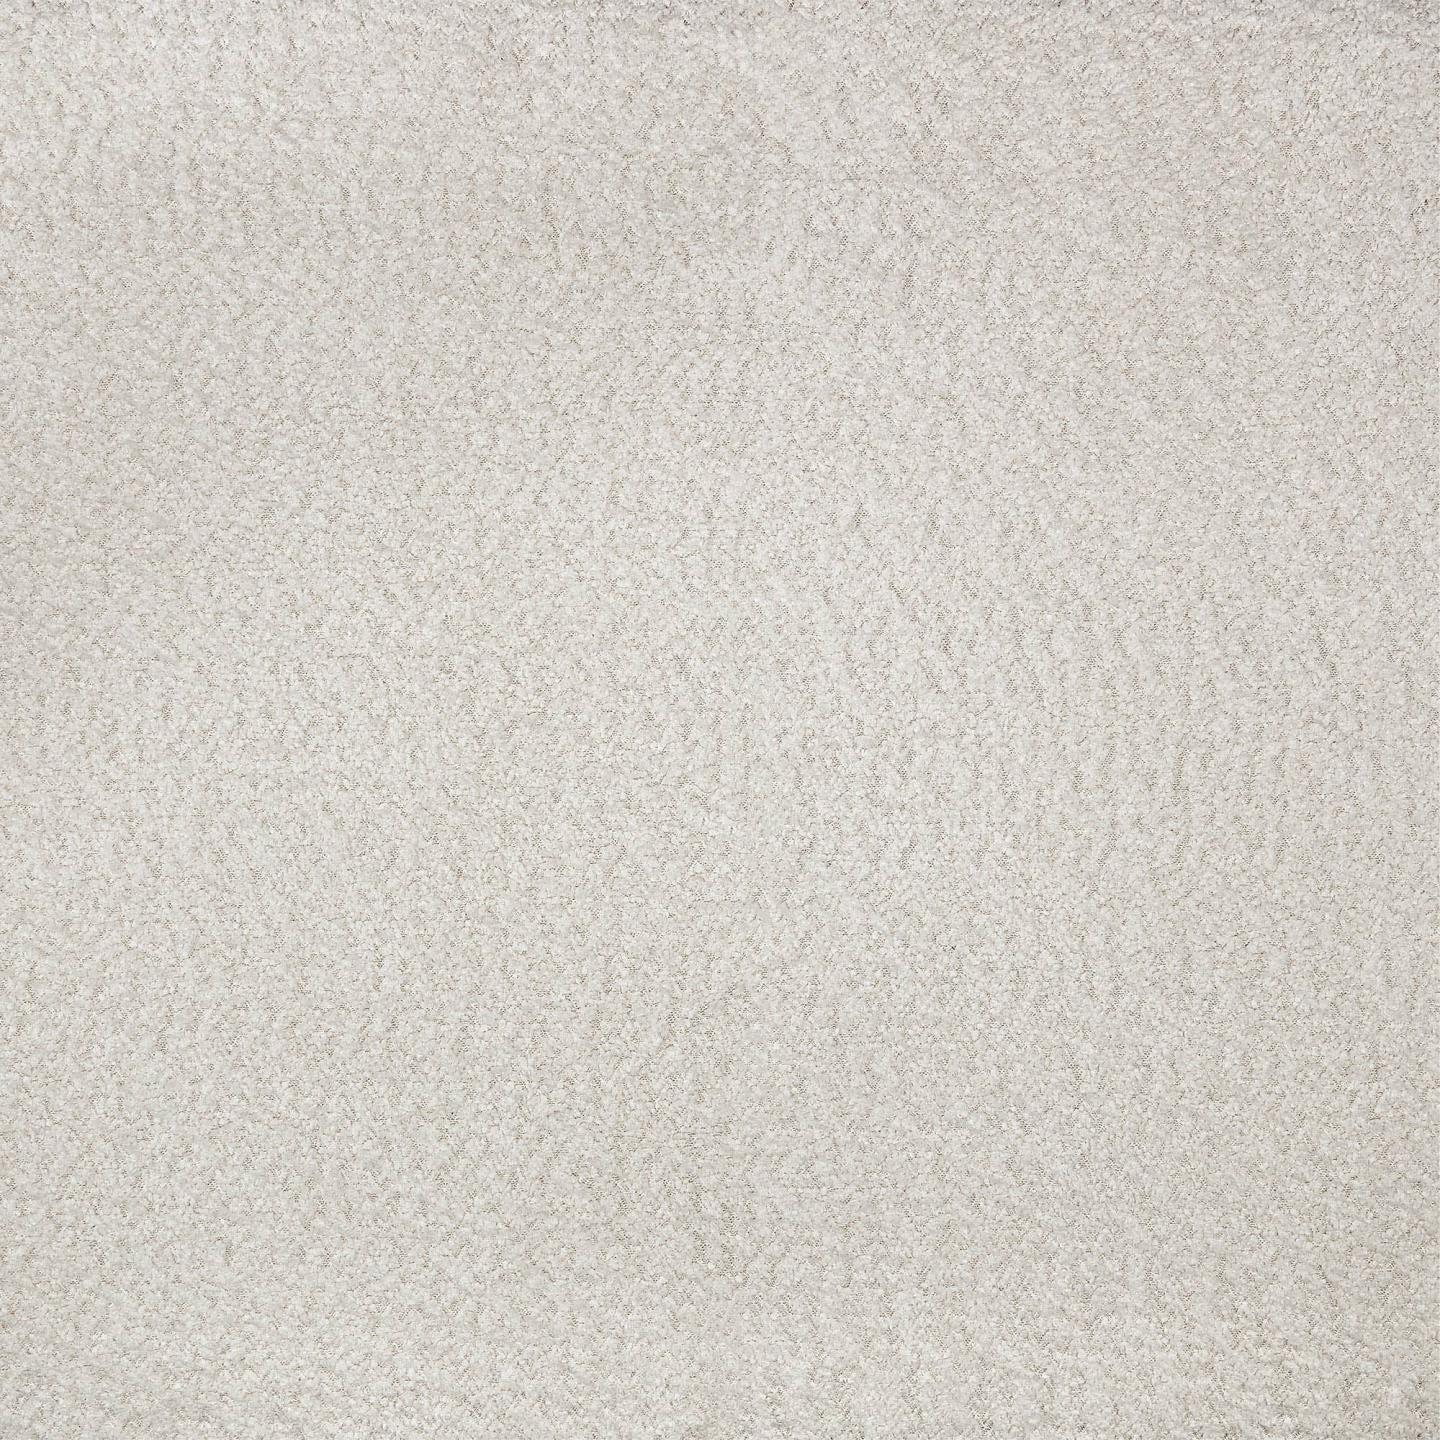 Lund Cushion - White Fleece